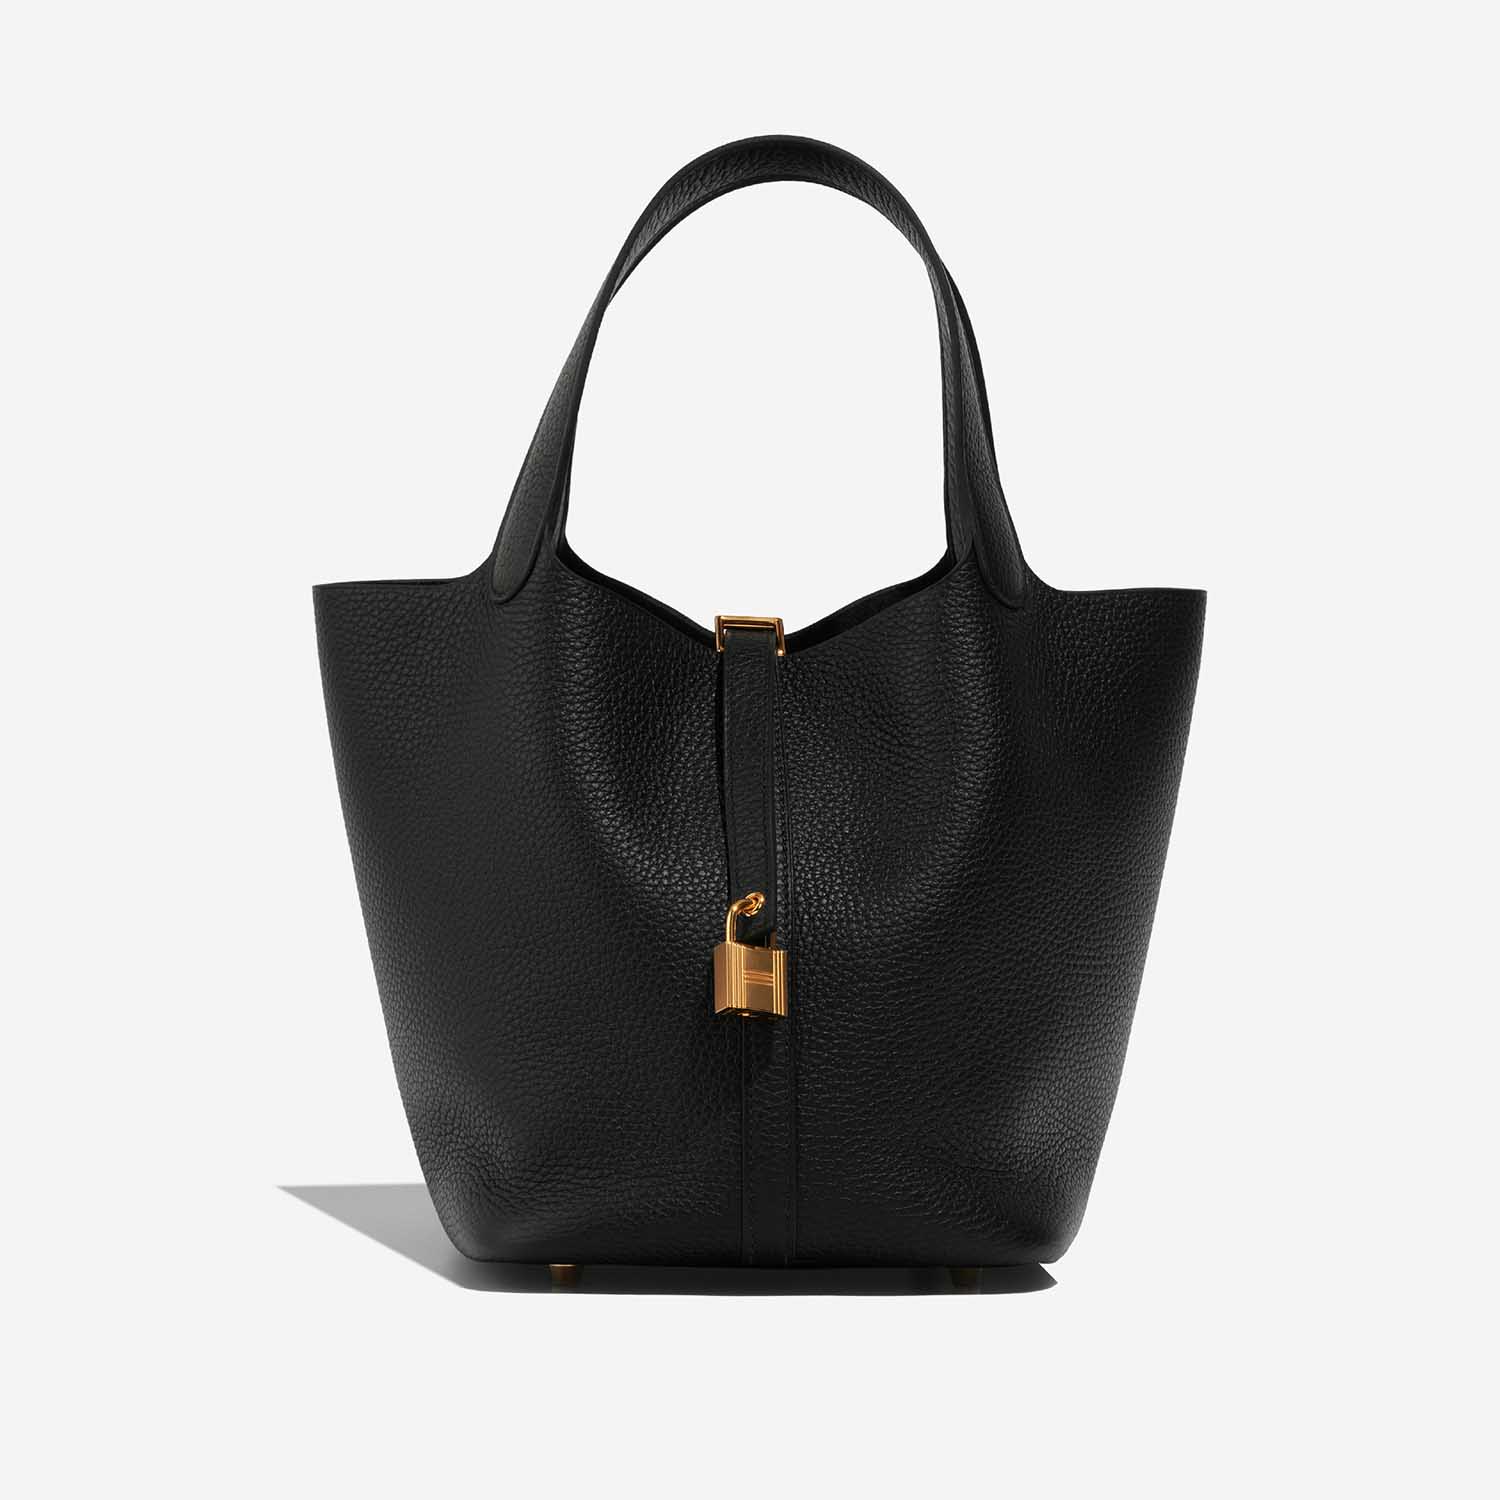 Hermès Picotin 22 Black Front | Verkaufen Sie Ihre Designer-Tasche auf Saclab.com